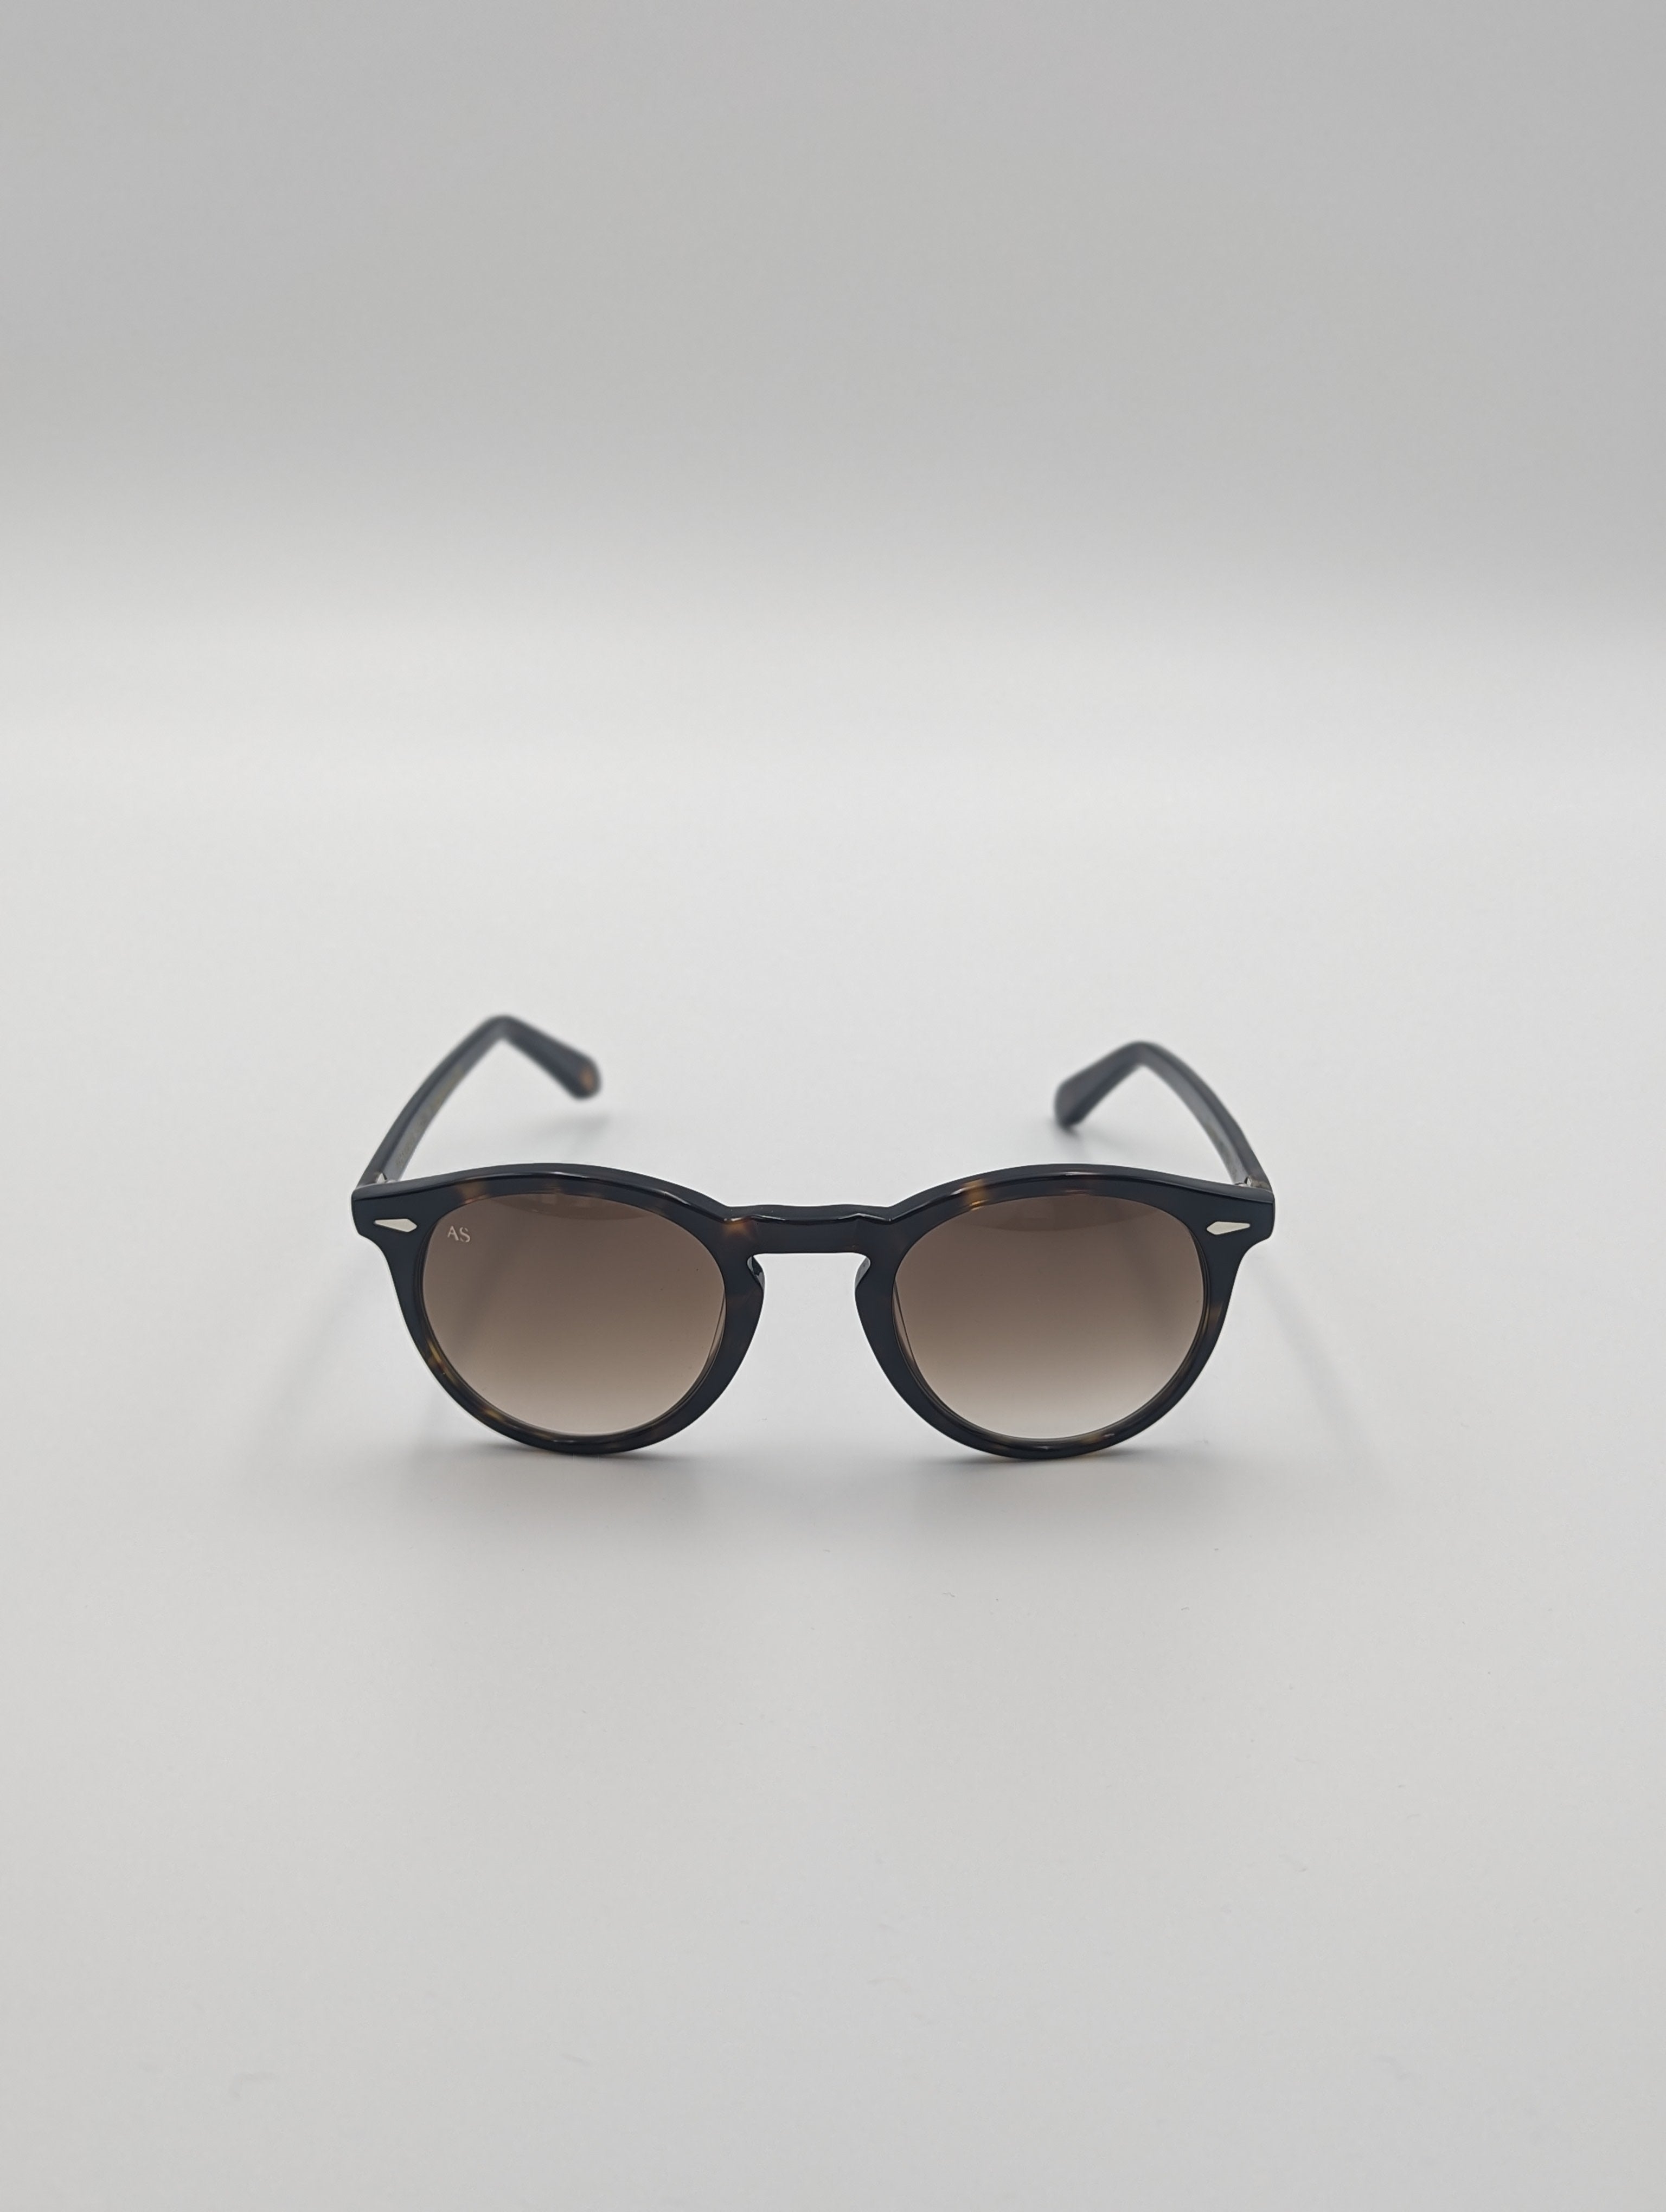 Sunglasses Iconic Tortoiseshell - Chocolate